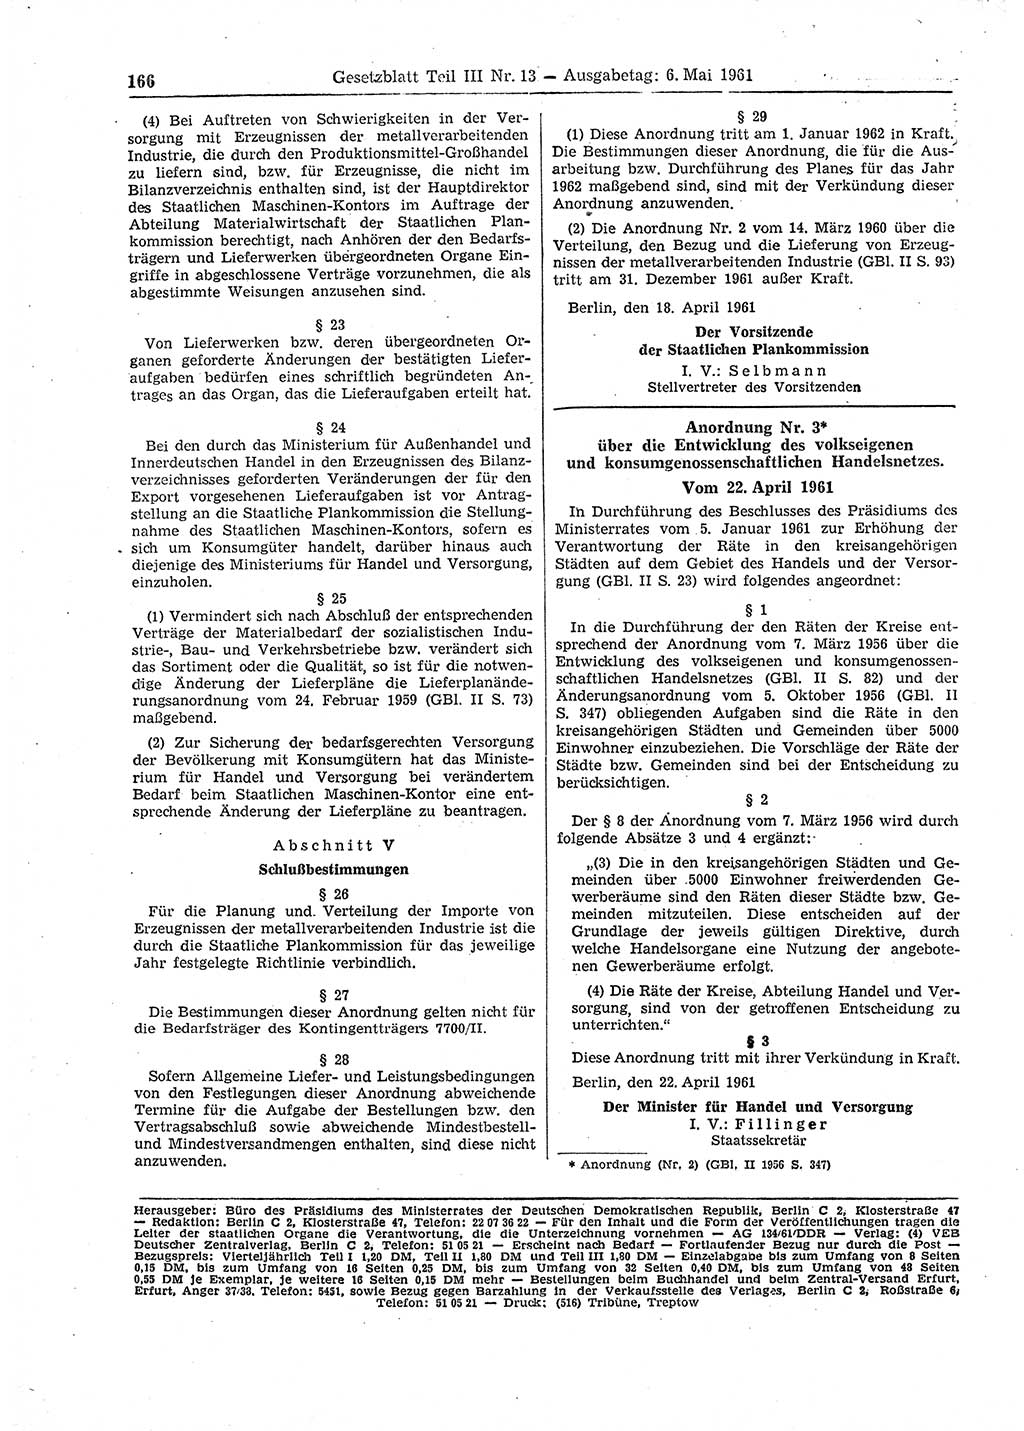 Gesetzblatt (GBl.) der Deutschen Demokratischen Republik (DDR) Teil ⅠⅠⅠ 1961, Seite 166 (GBl. DDR ⅠⅠⅠ 1961, S. 166)